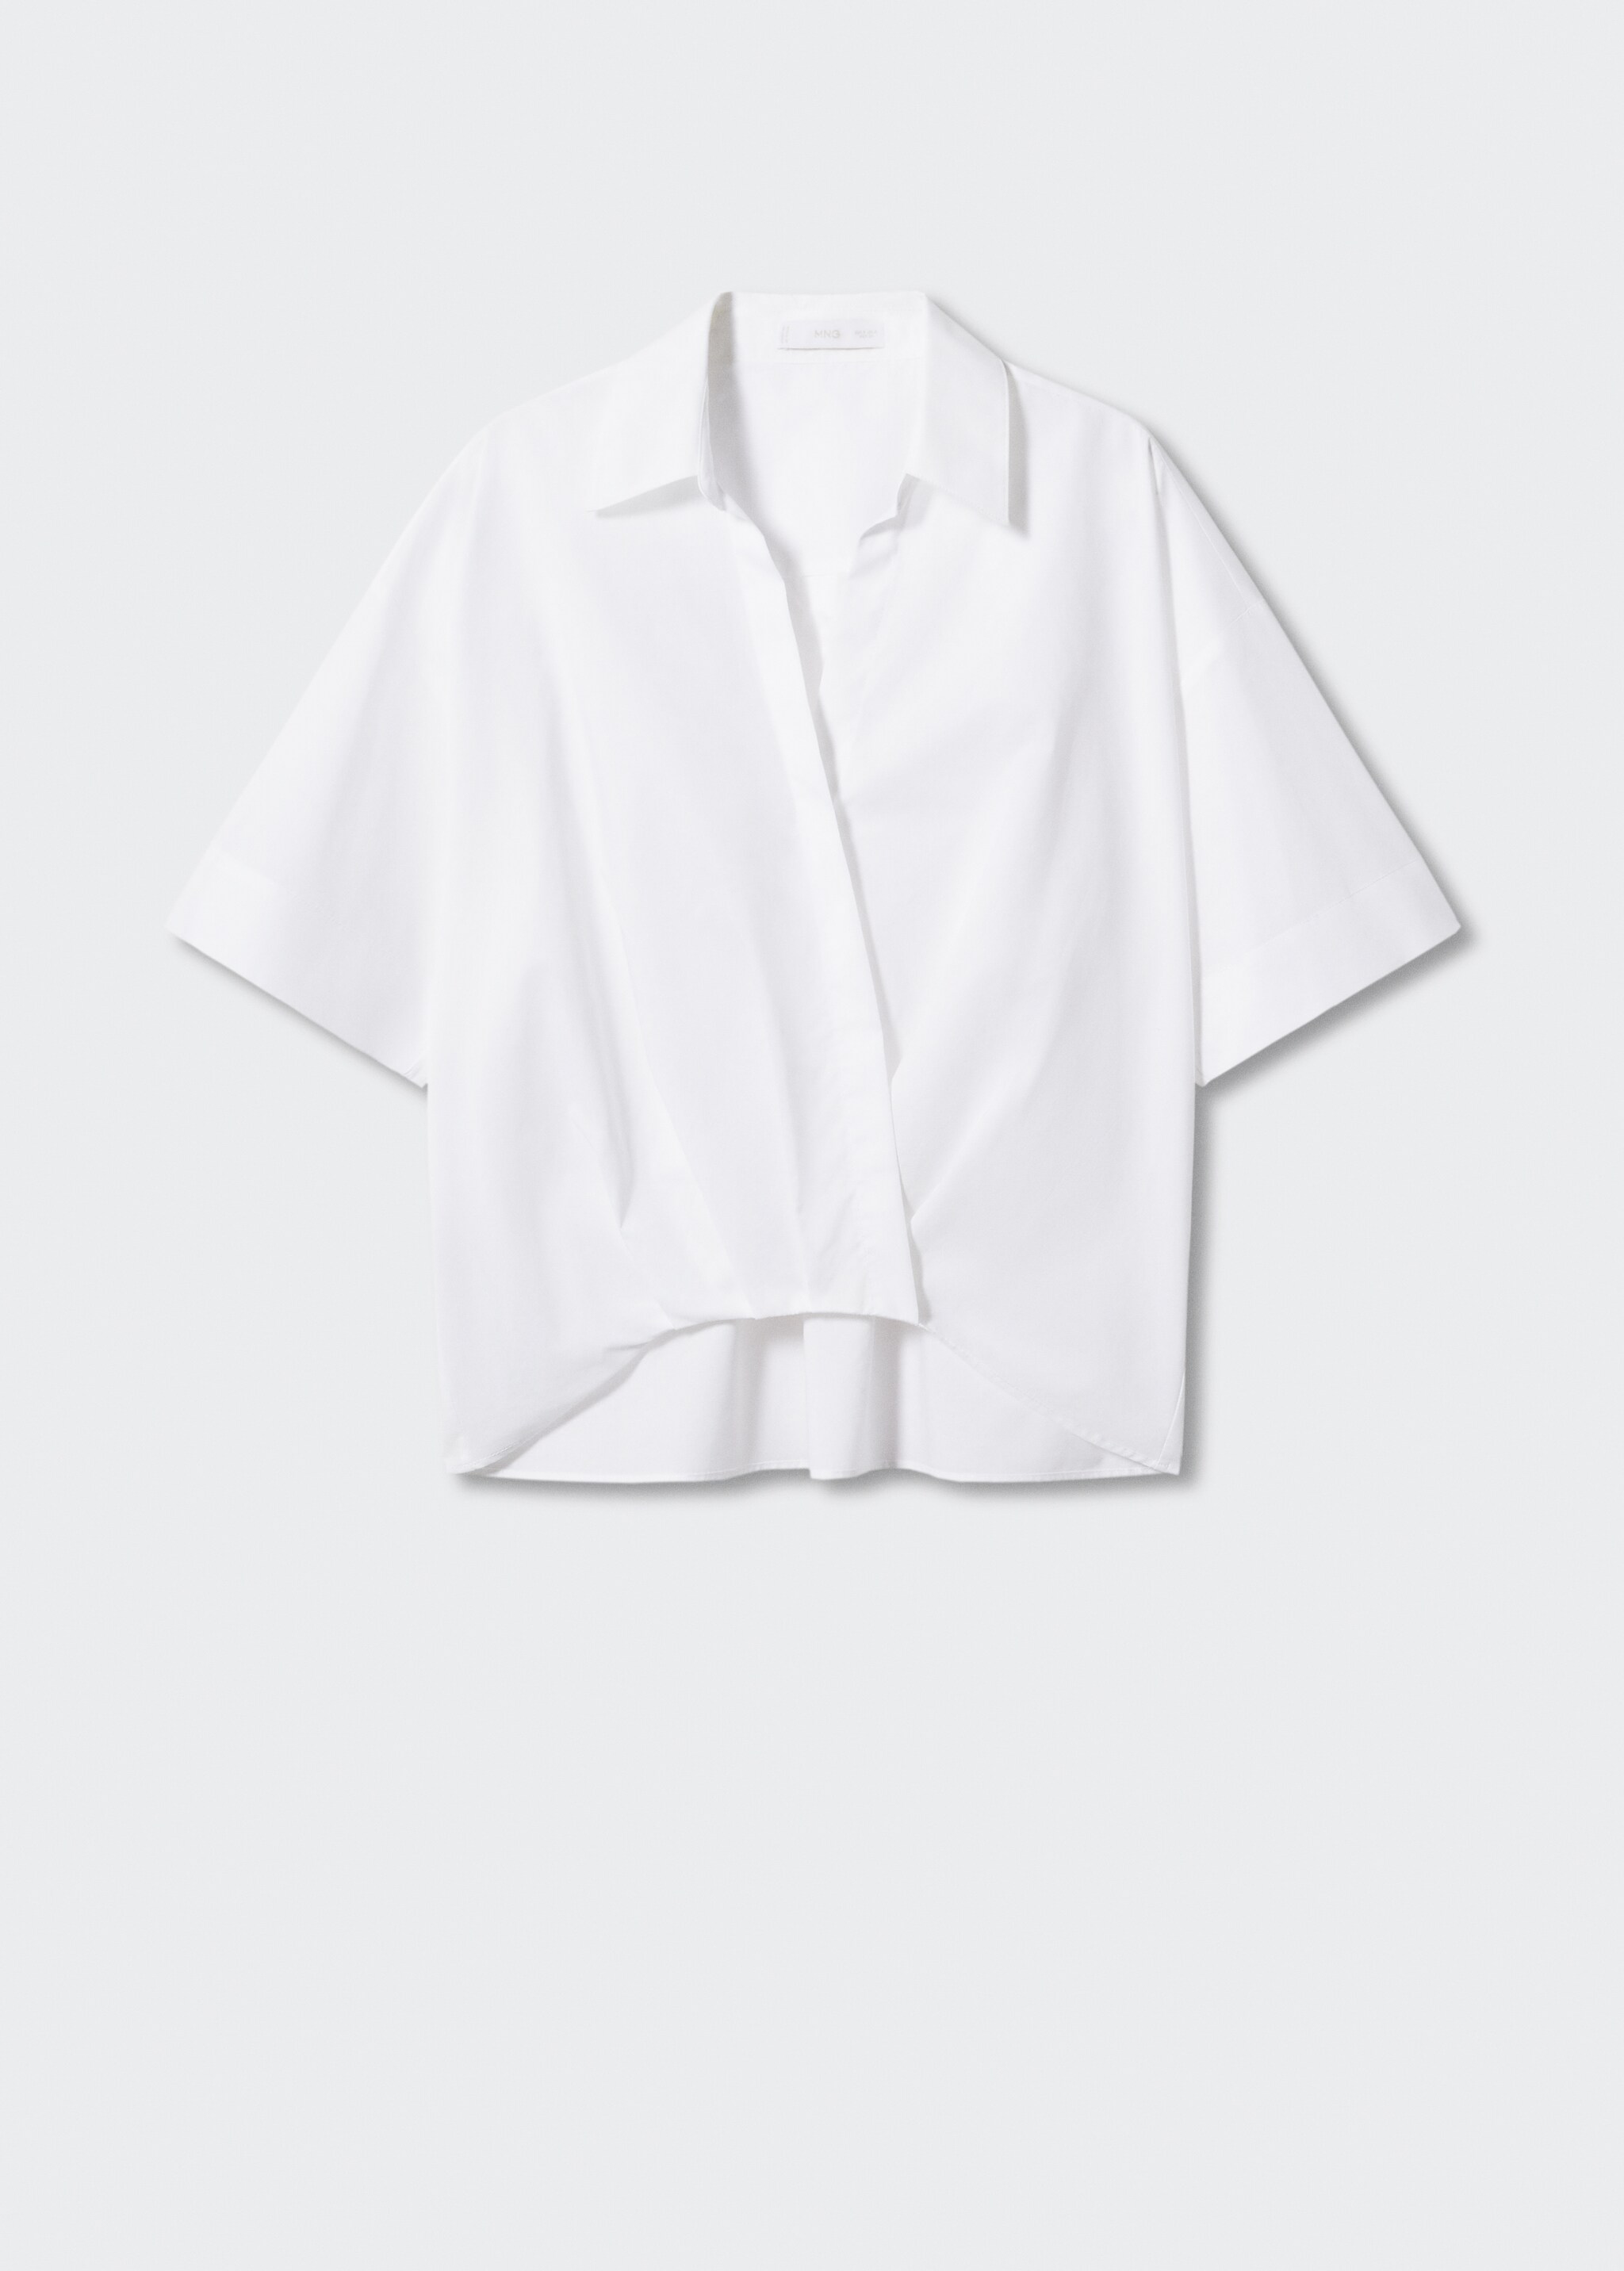 Camisa algodón cruzada - Artículo sin modelo